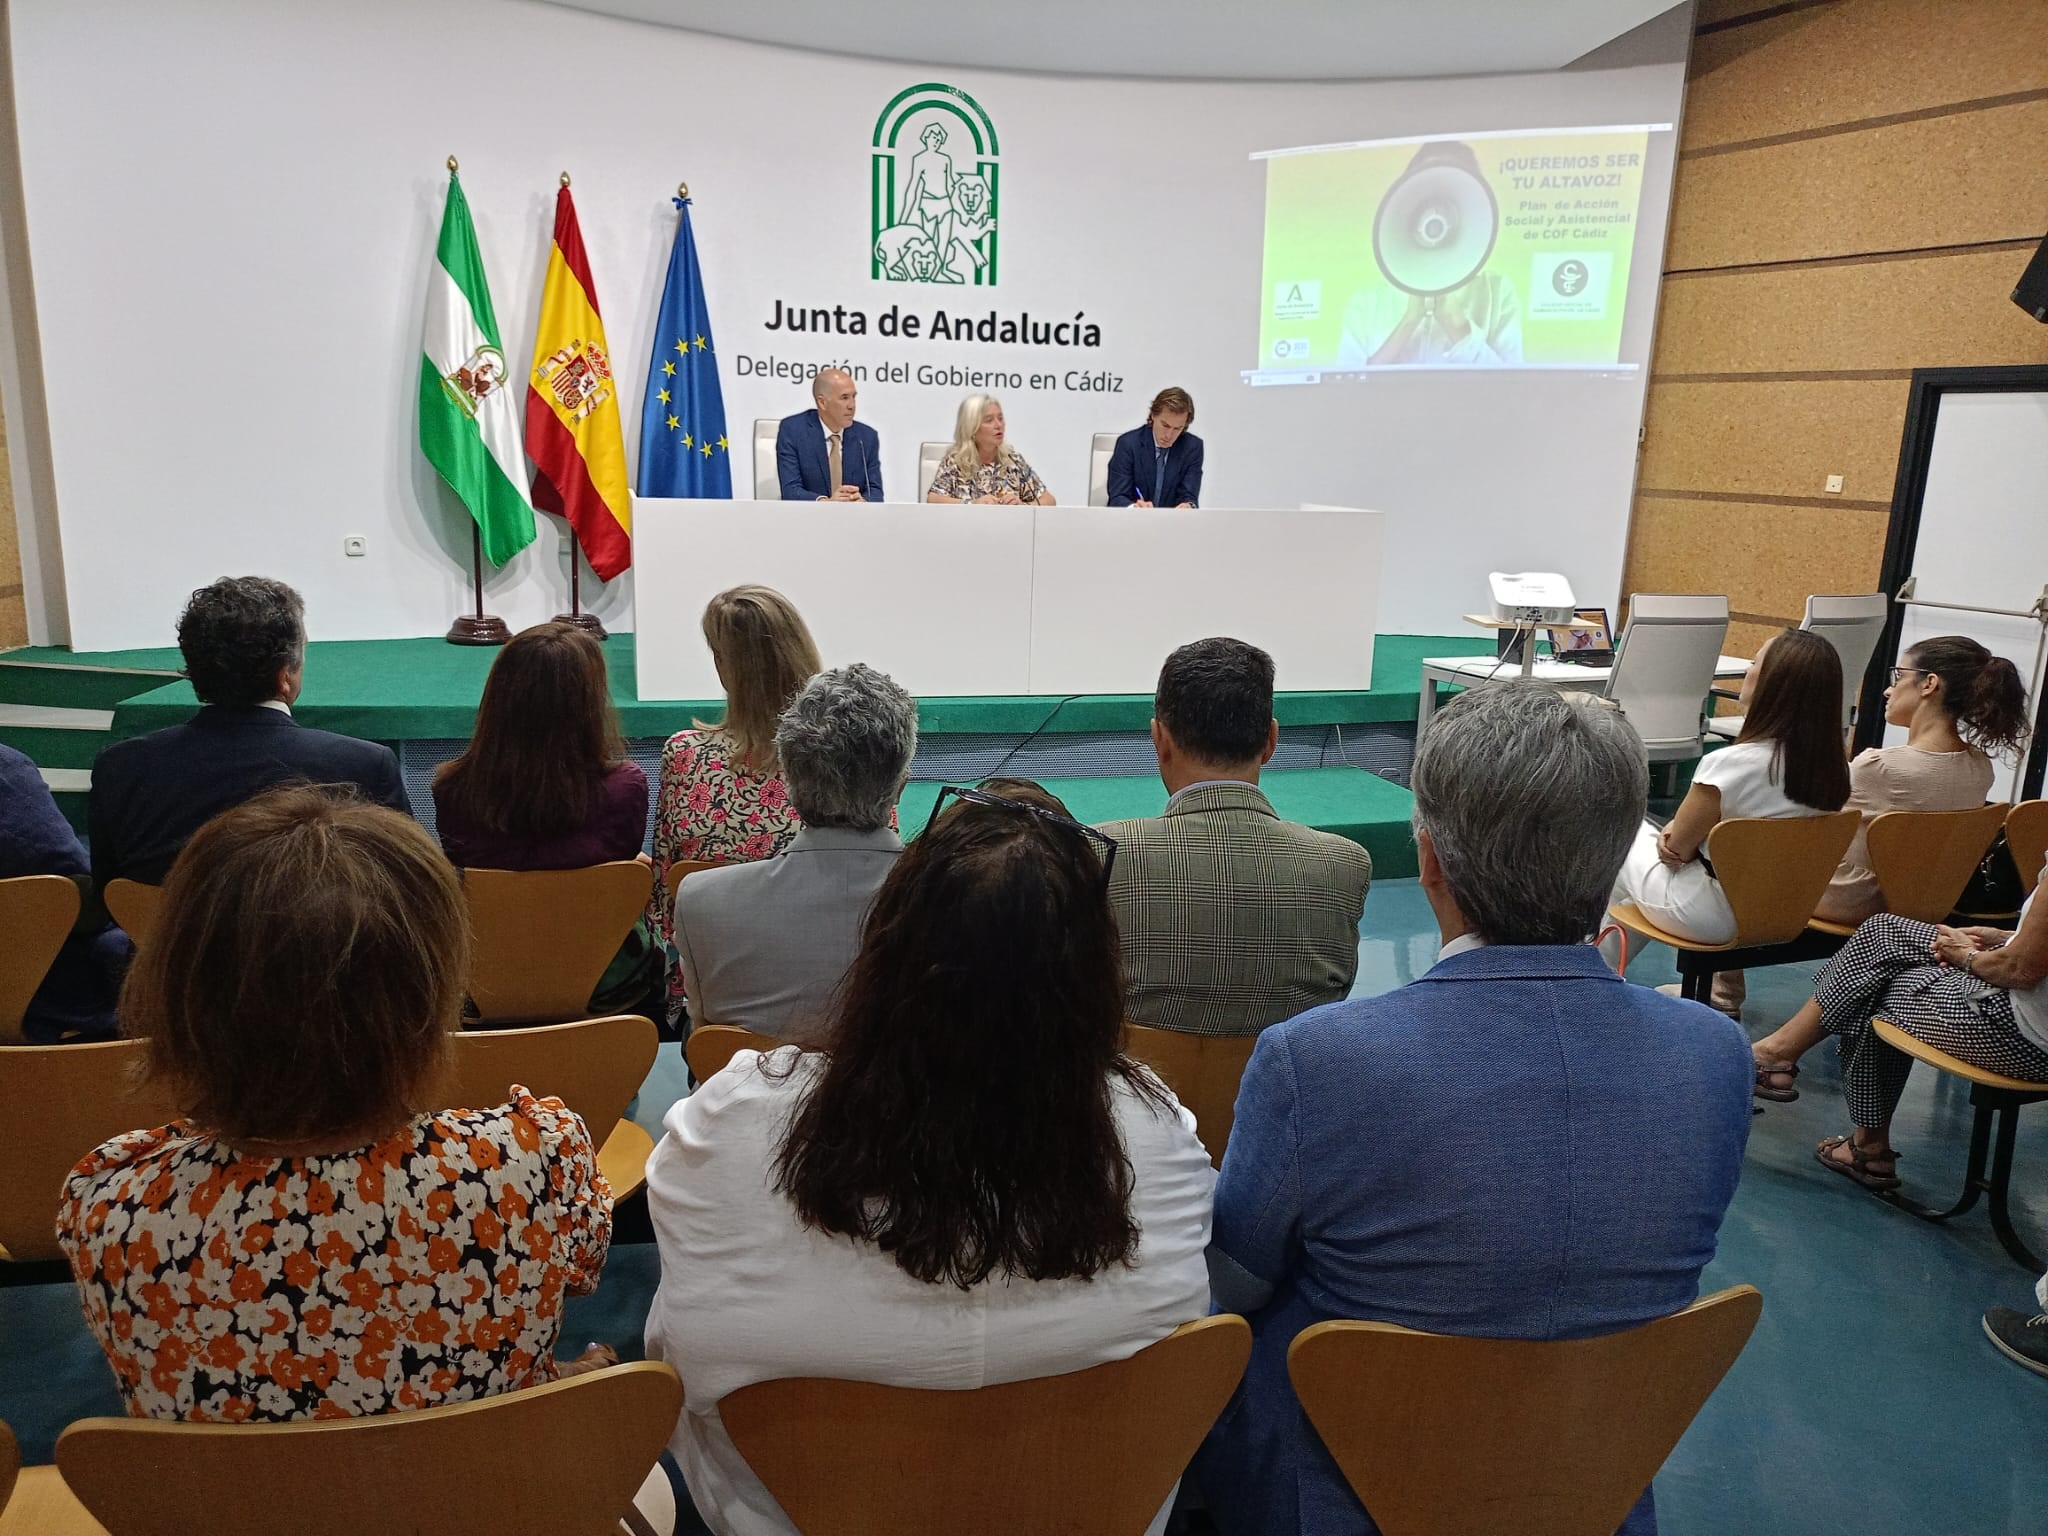 Los farmacéuticos de Cádiz presentan su estrategia asistencial y social para contribuir a los Objetivos de Desarrollo Sostenible de Naciones Unidas